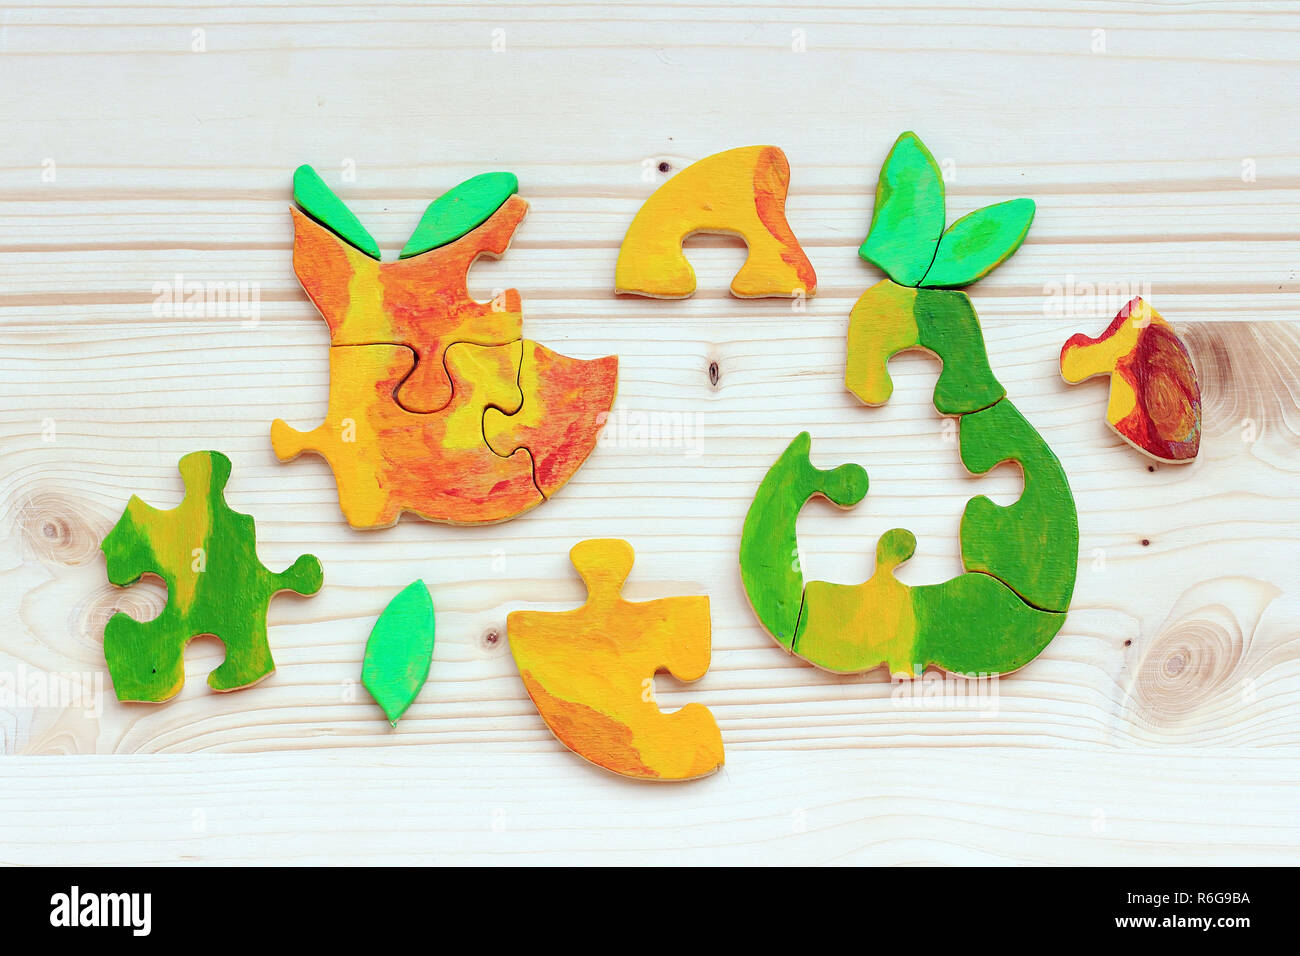 Dos puzzles de madera hecha de piezas coloridas. coloridos frutos como un rompecabezas un bonito juguete niños Fotografía de stock - Alamy